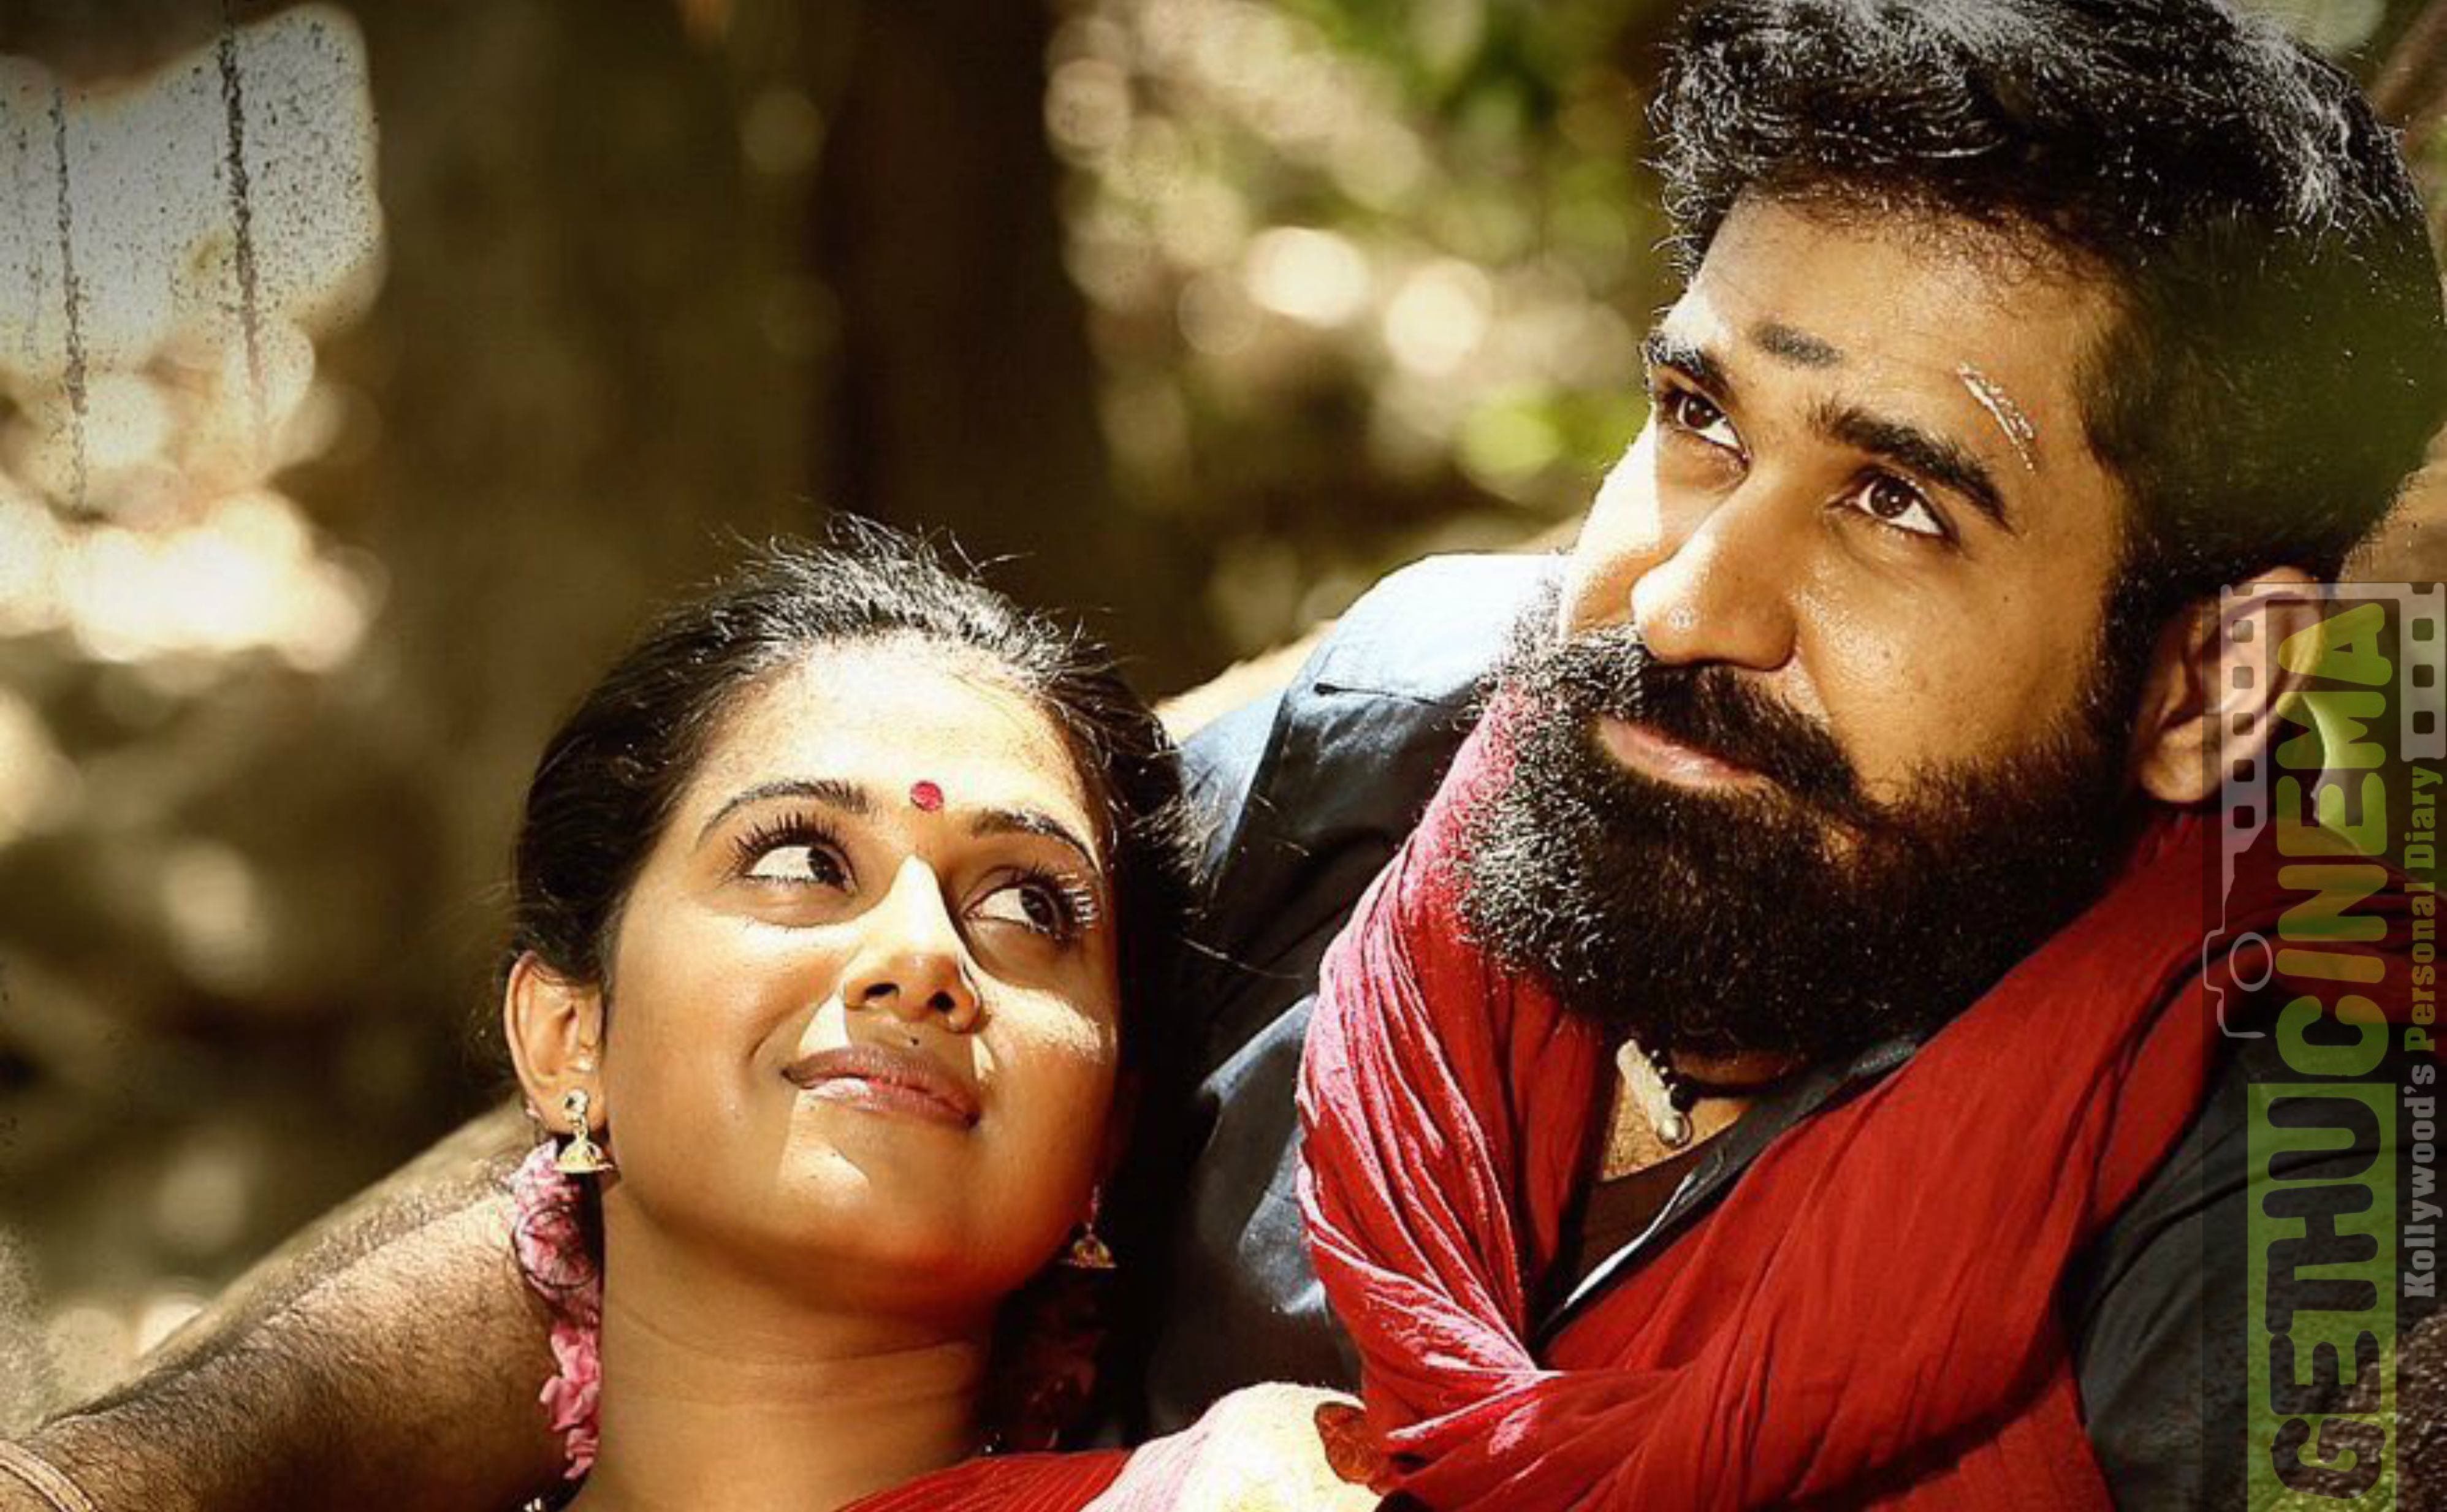 Kaali Tamil Movie HD First Look Poster. Vijay Antony Cinema. Tamil movies, Antony, Movies